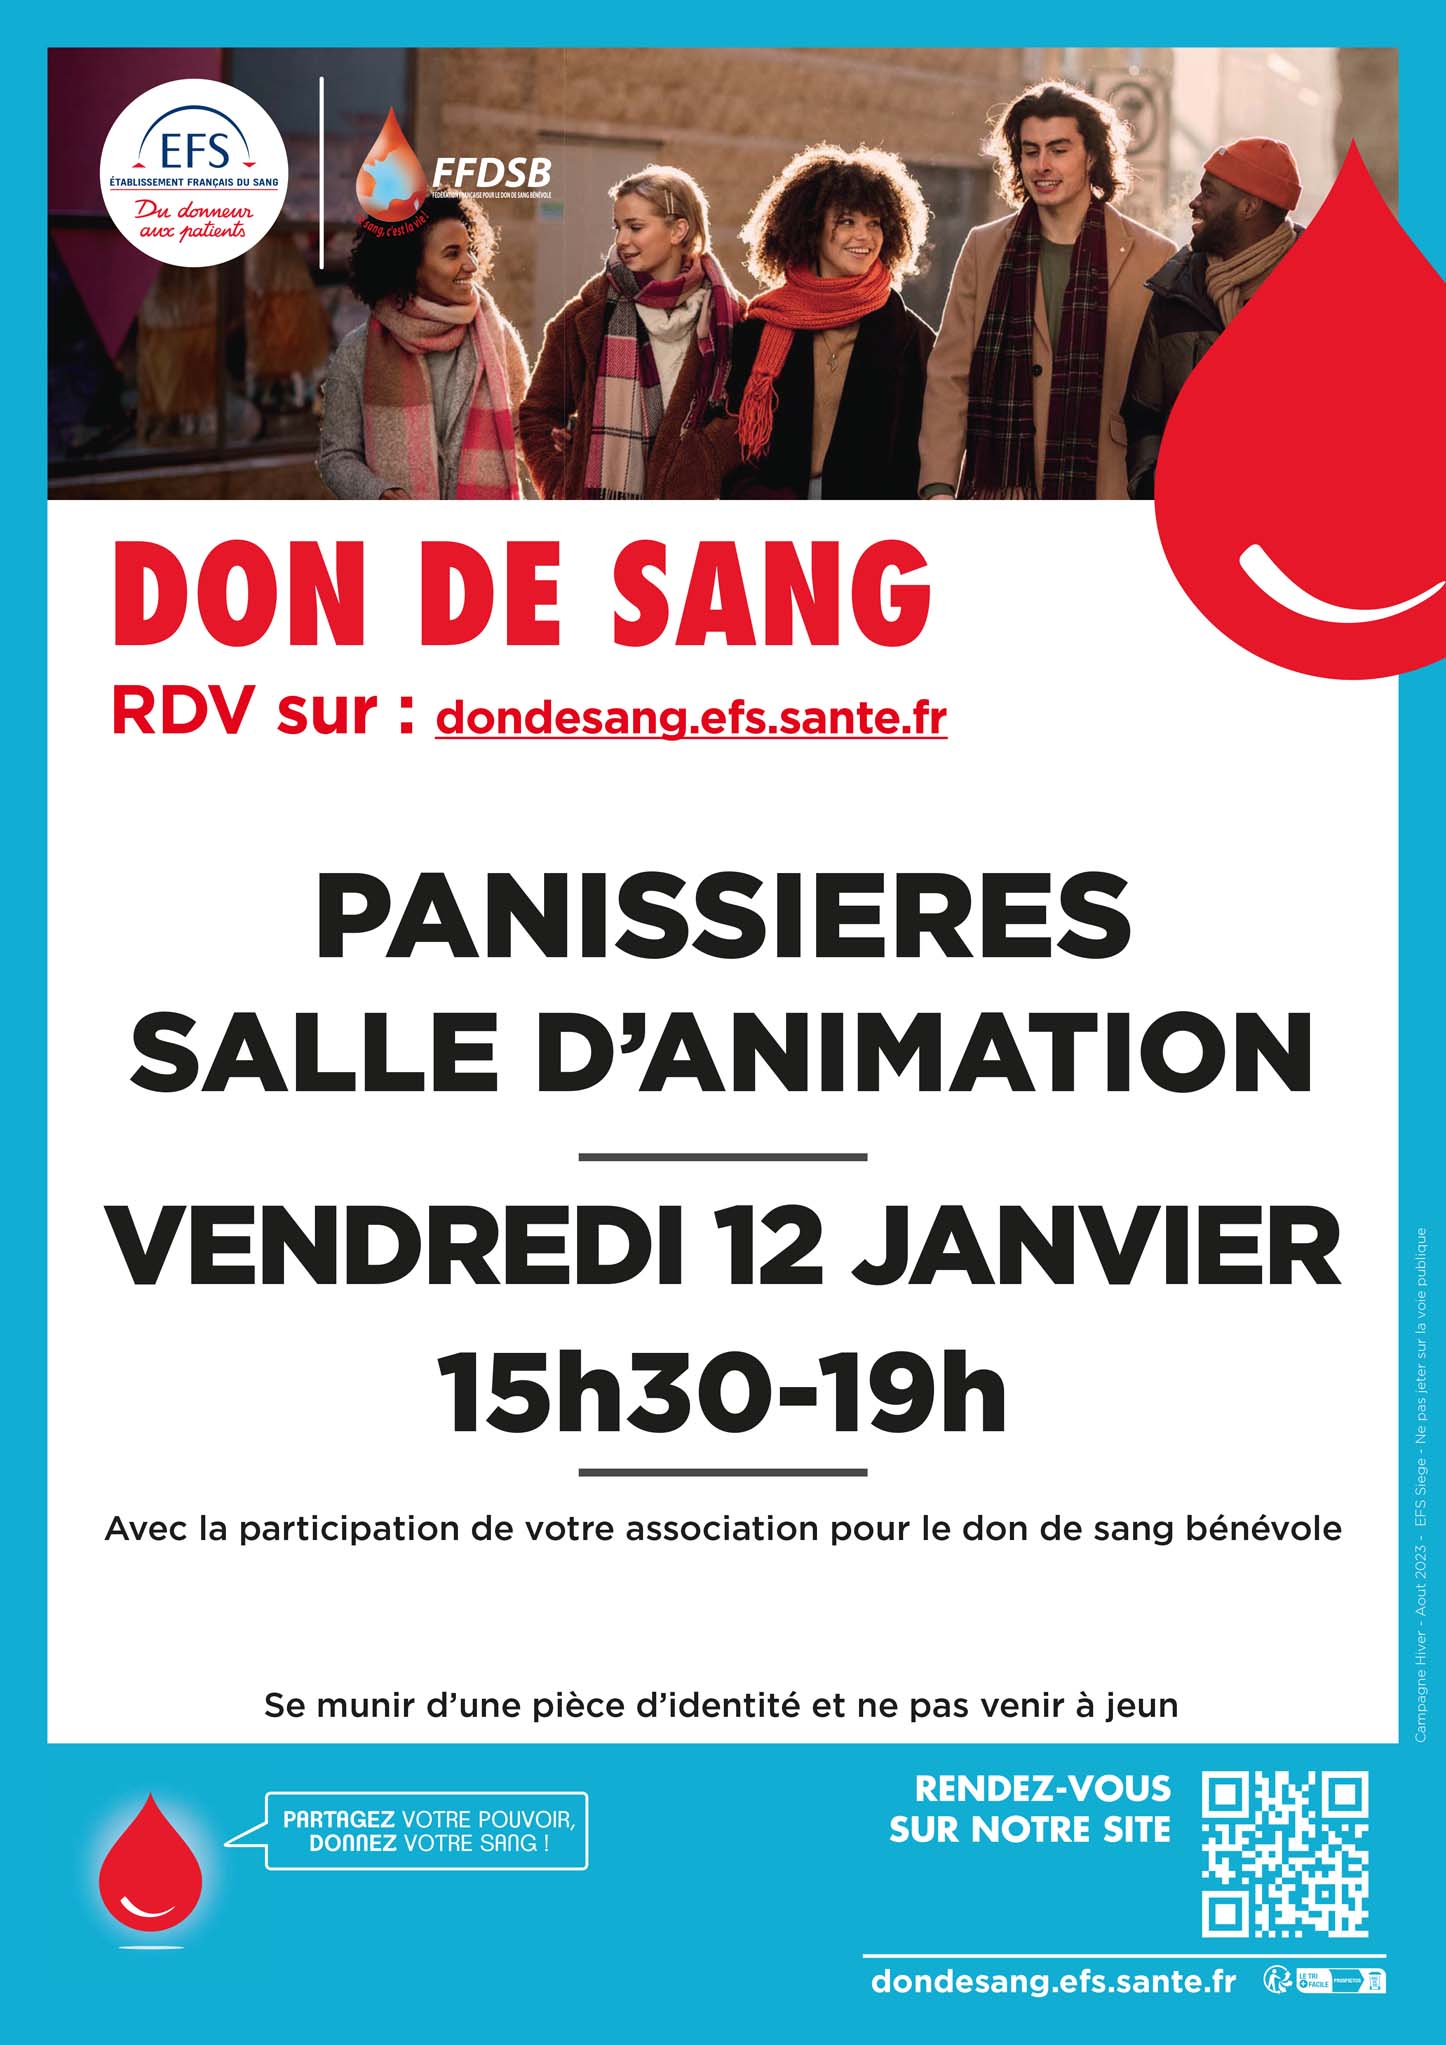 You are currently viewing Vendredi 12 janvier : Don de sang à Panissières